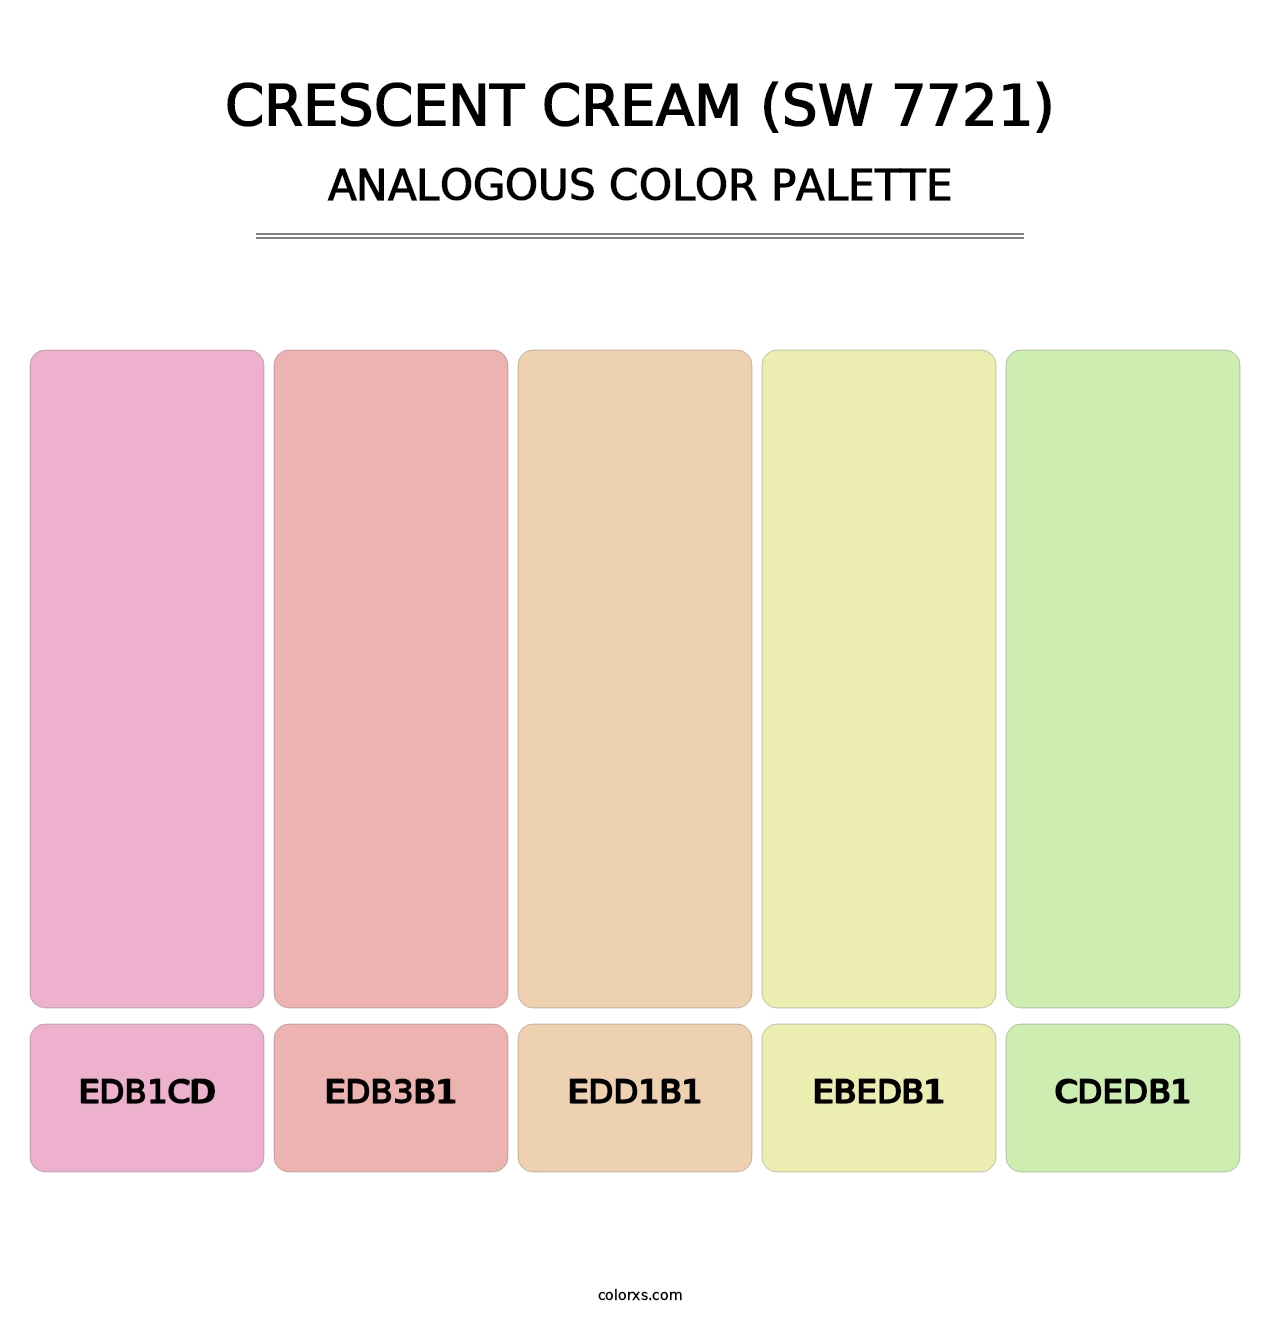 Crescent Cream (SW 7721) - Analogous Color Palette